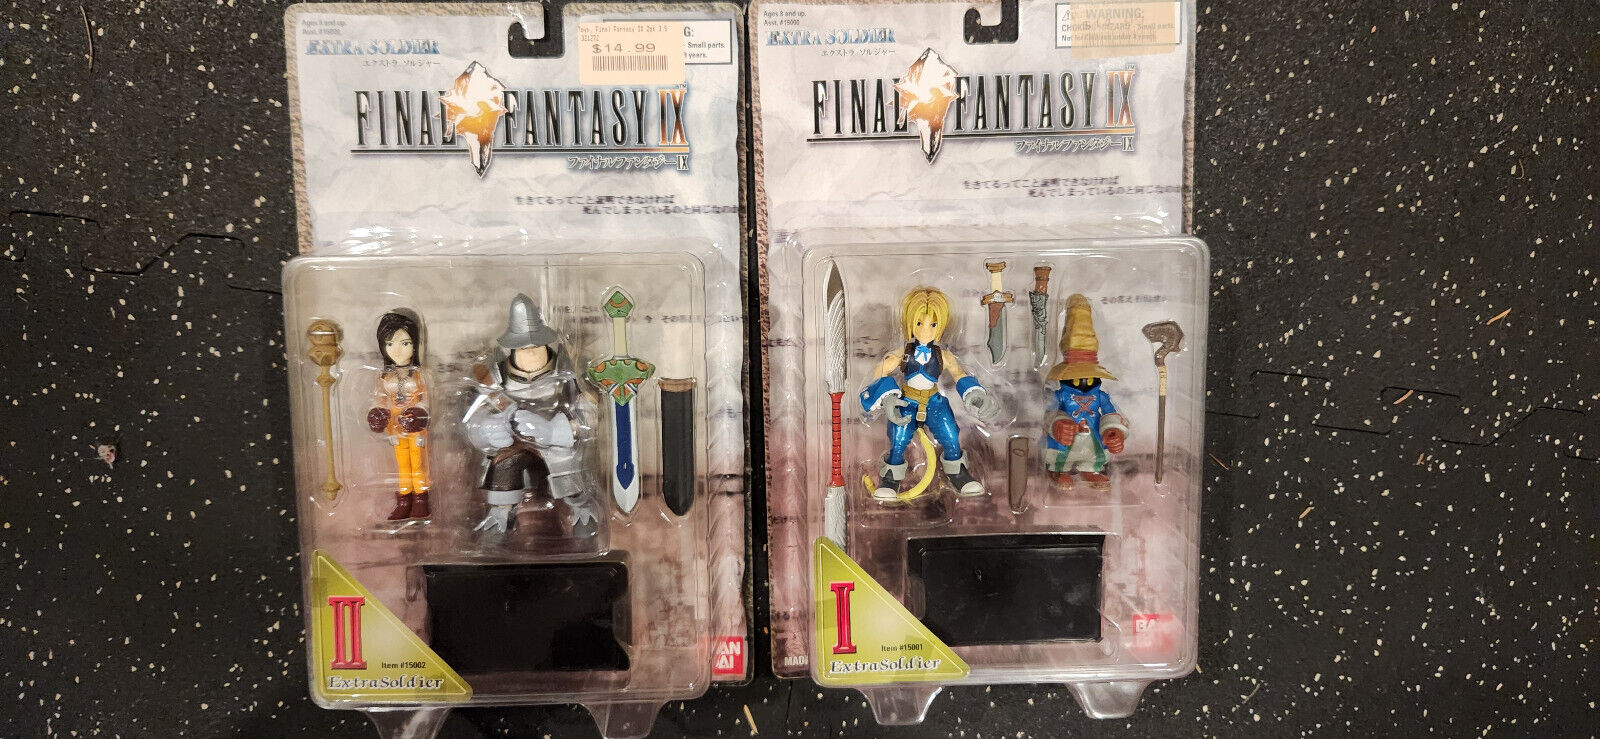 2000 Final Fantasy IX 9 ASST 15000 Extra Soldier 1 & 2 Figures Bandai - 2 NIB 